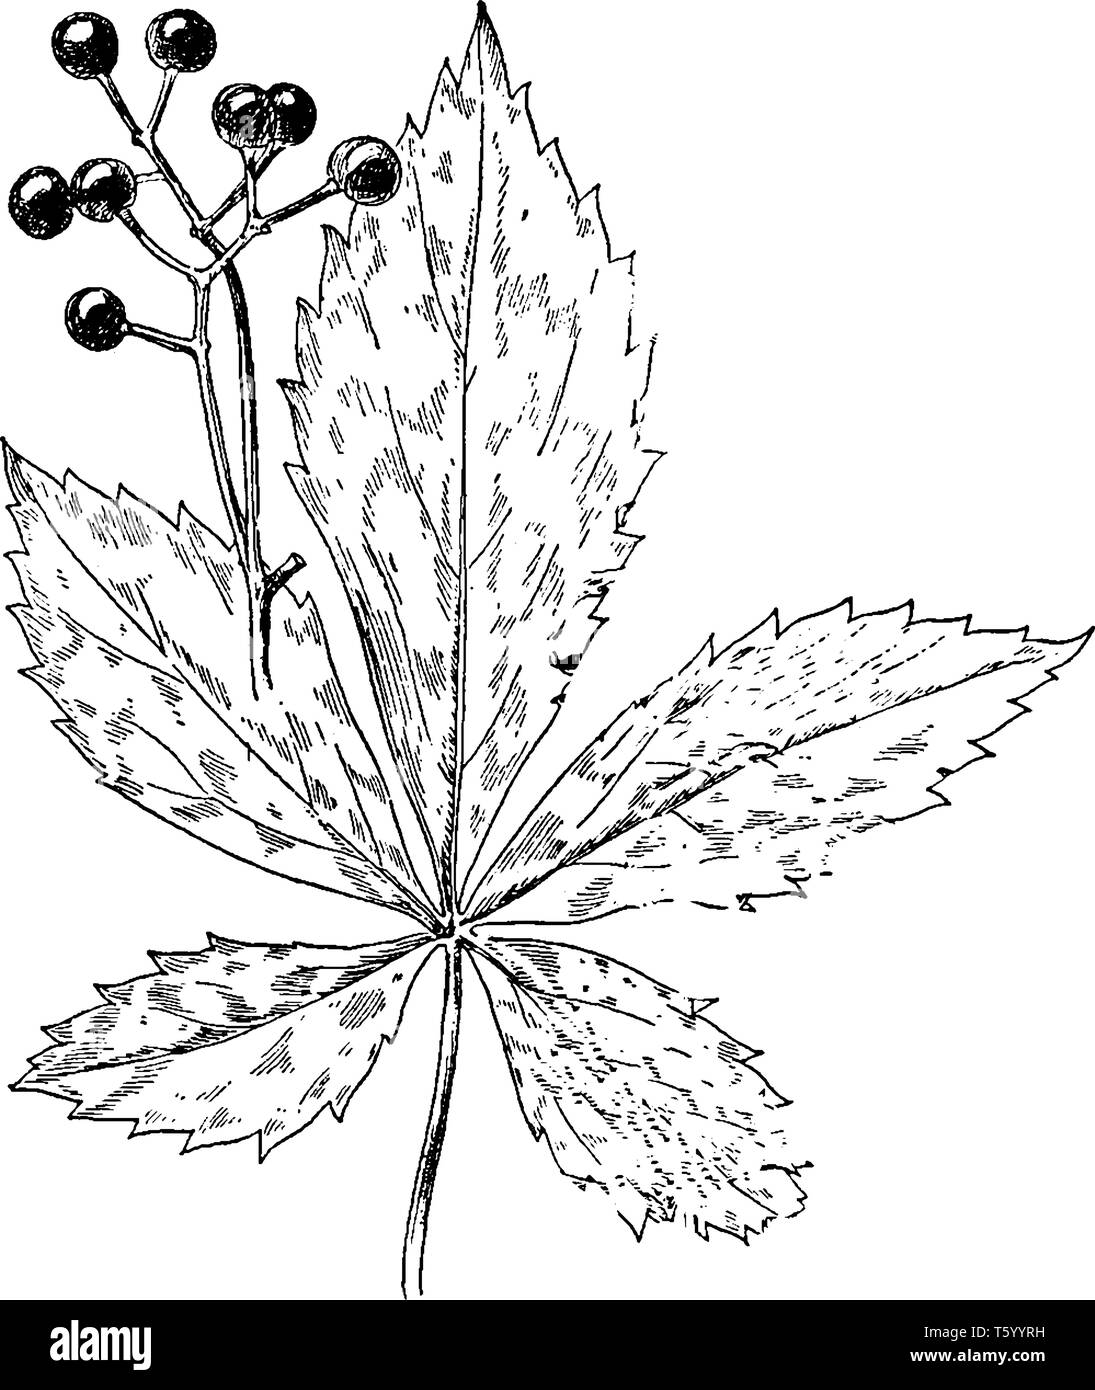 Das Bild von Blättern und Früchten von Virginia Creeper gefunden in Mittel- und Osteuropa Nordamerika, vintage Strichzeichnung oder Gravur Abbildung. Stock Vektor